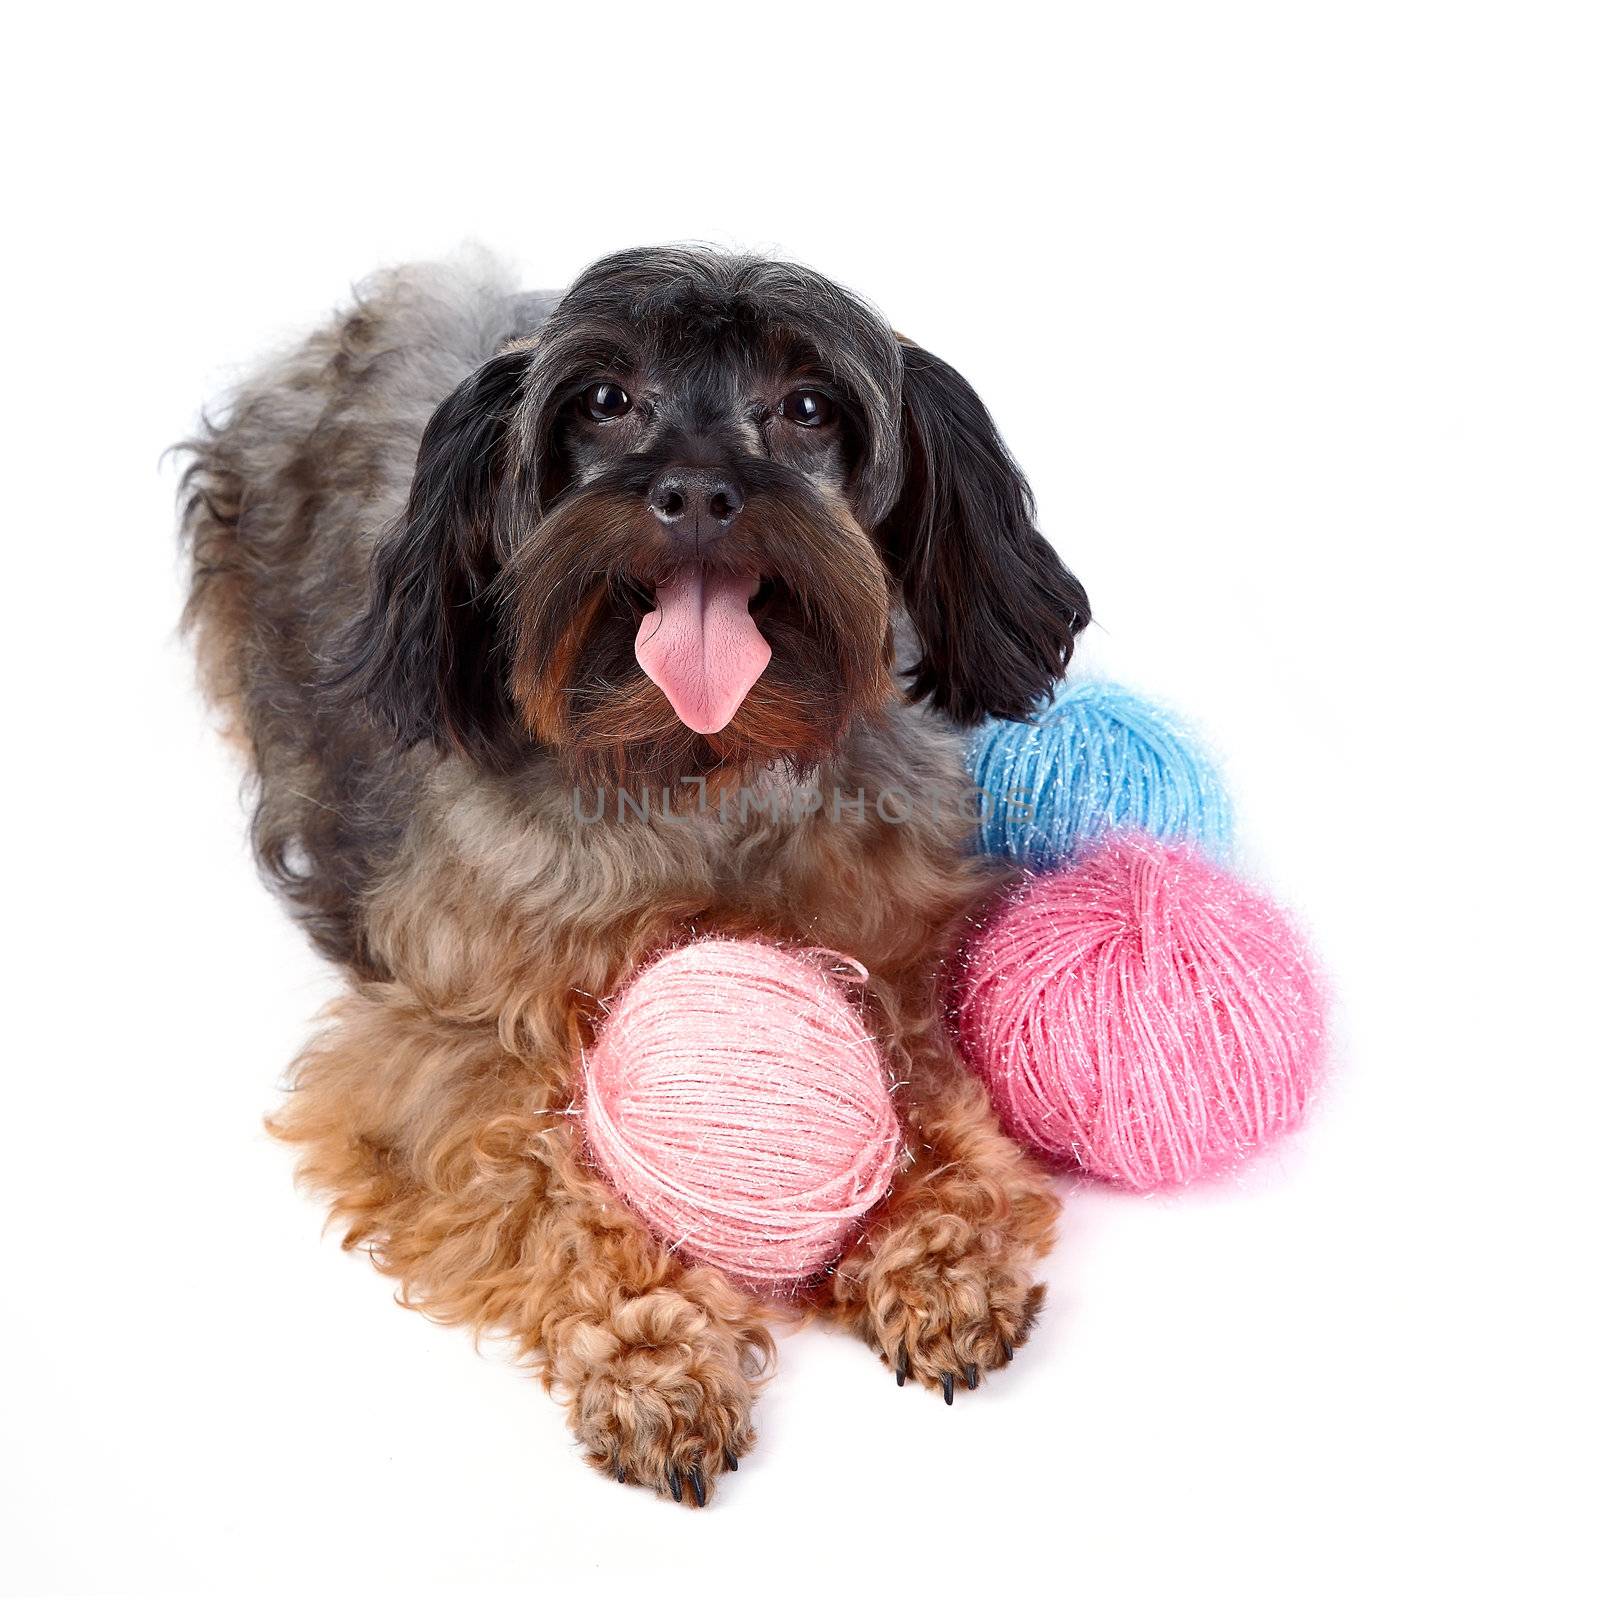 Decorative fluffy dog and woolen balls by Azaliya